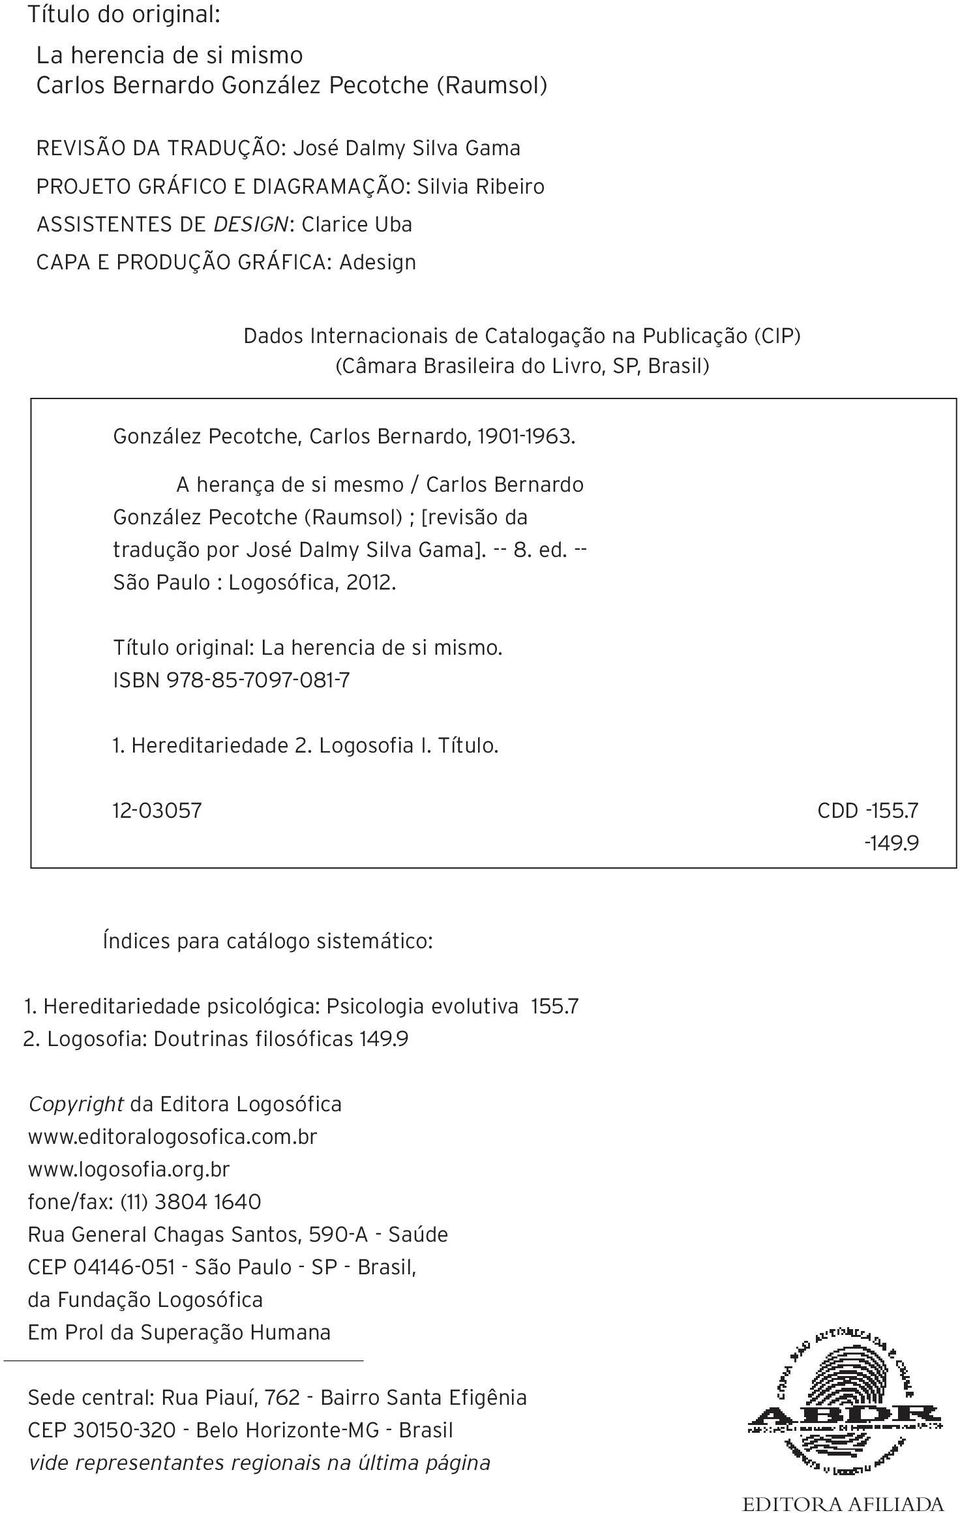 A herança de si mesmo / Carlos Bernardo González Pecotche (Raumsol) ; [revisão da tradução por José Dalmy Silva Gama]. -- 8. ed. -- São Paulo : Logosófica, 2012.